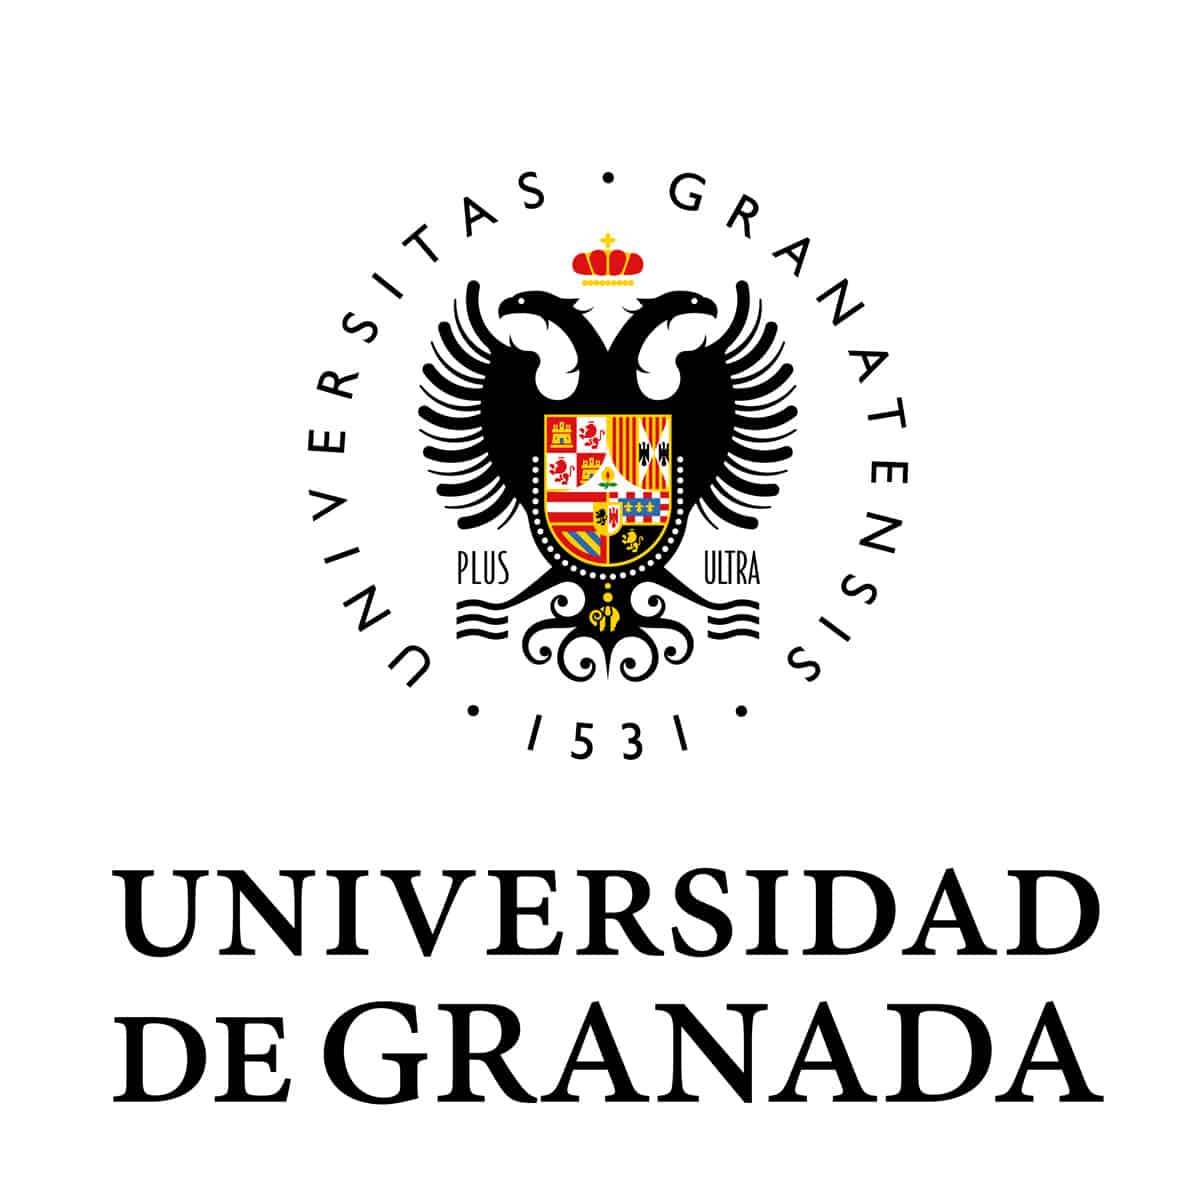 Hapet thirrja për aplikime për studentët  në Universitetin e Granadës, Spanjë, në kuadër të Programit Erasmus+,  për semestrin e parë të vitit akademik 2021-2022